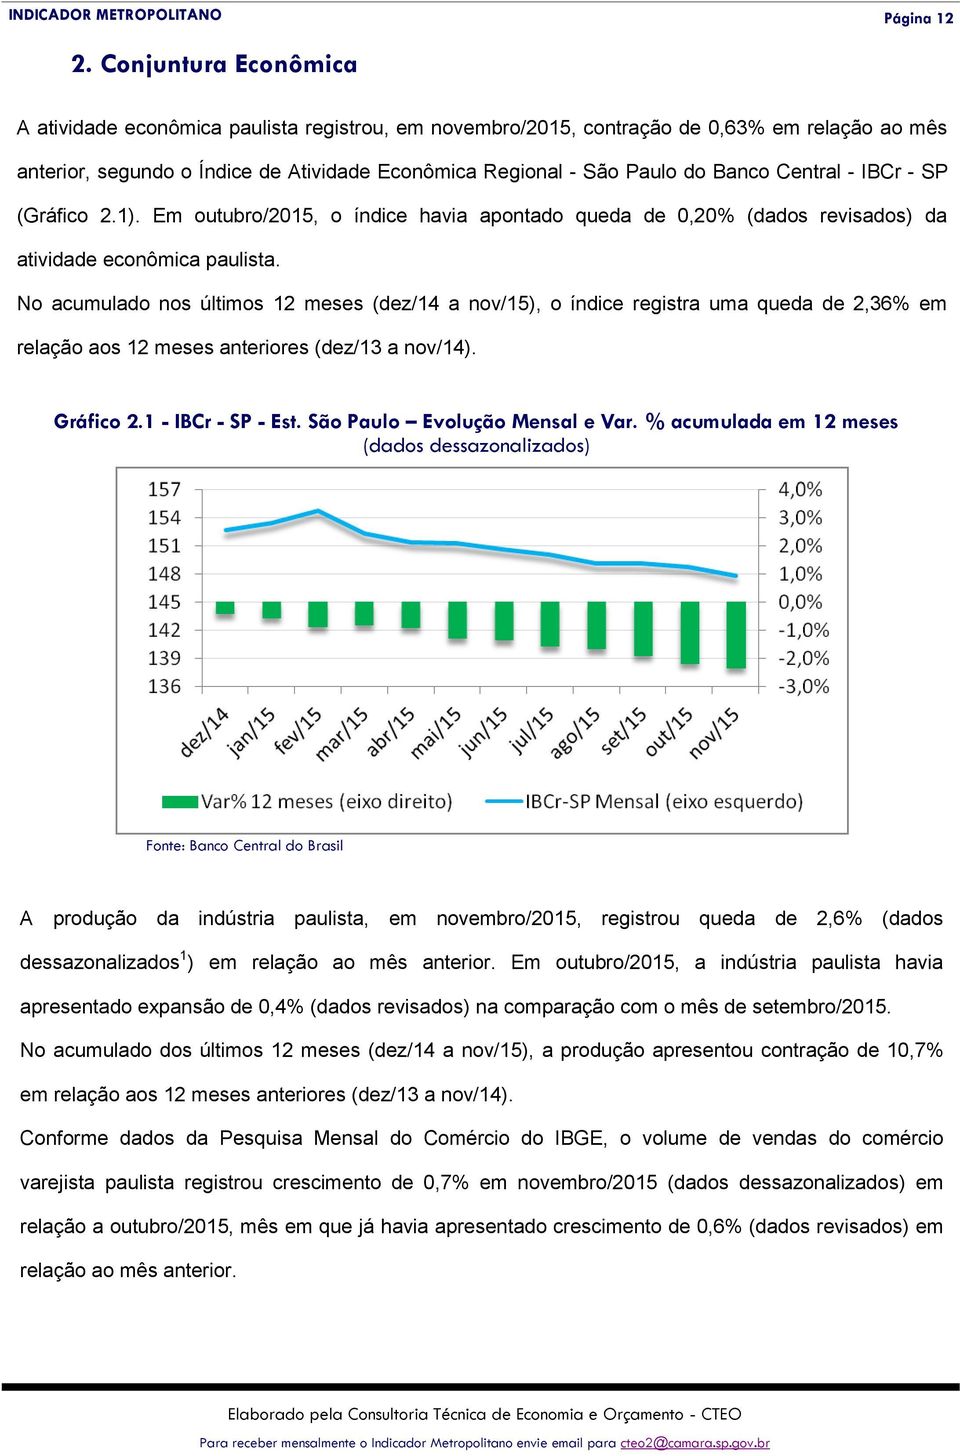 Central - IBCr - SP (Gráfico 2.1). Em outubro/2015, o índice havia apontado queda de 0,20% (dados revisados) da atividade econômica paulista.